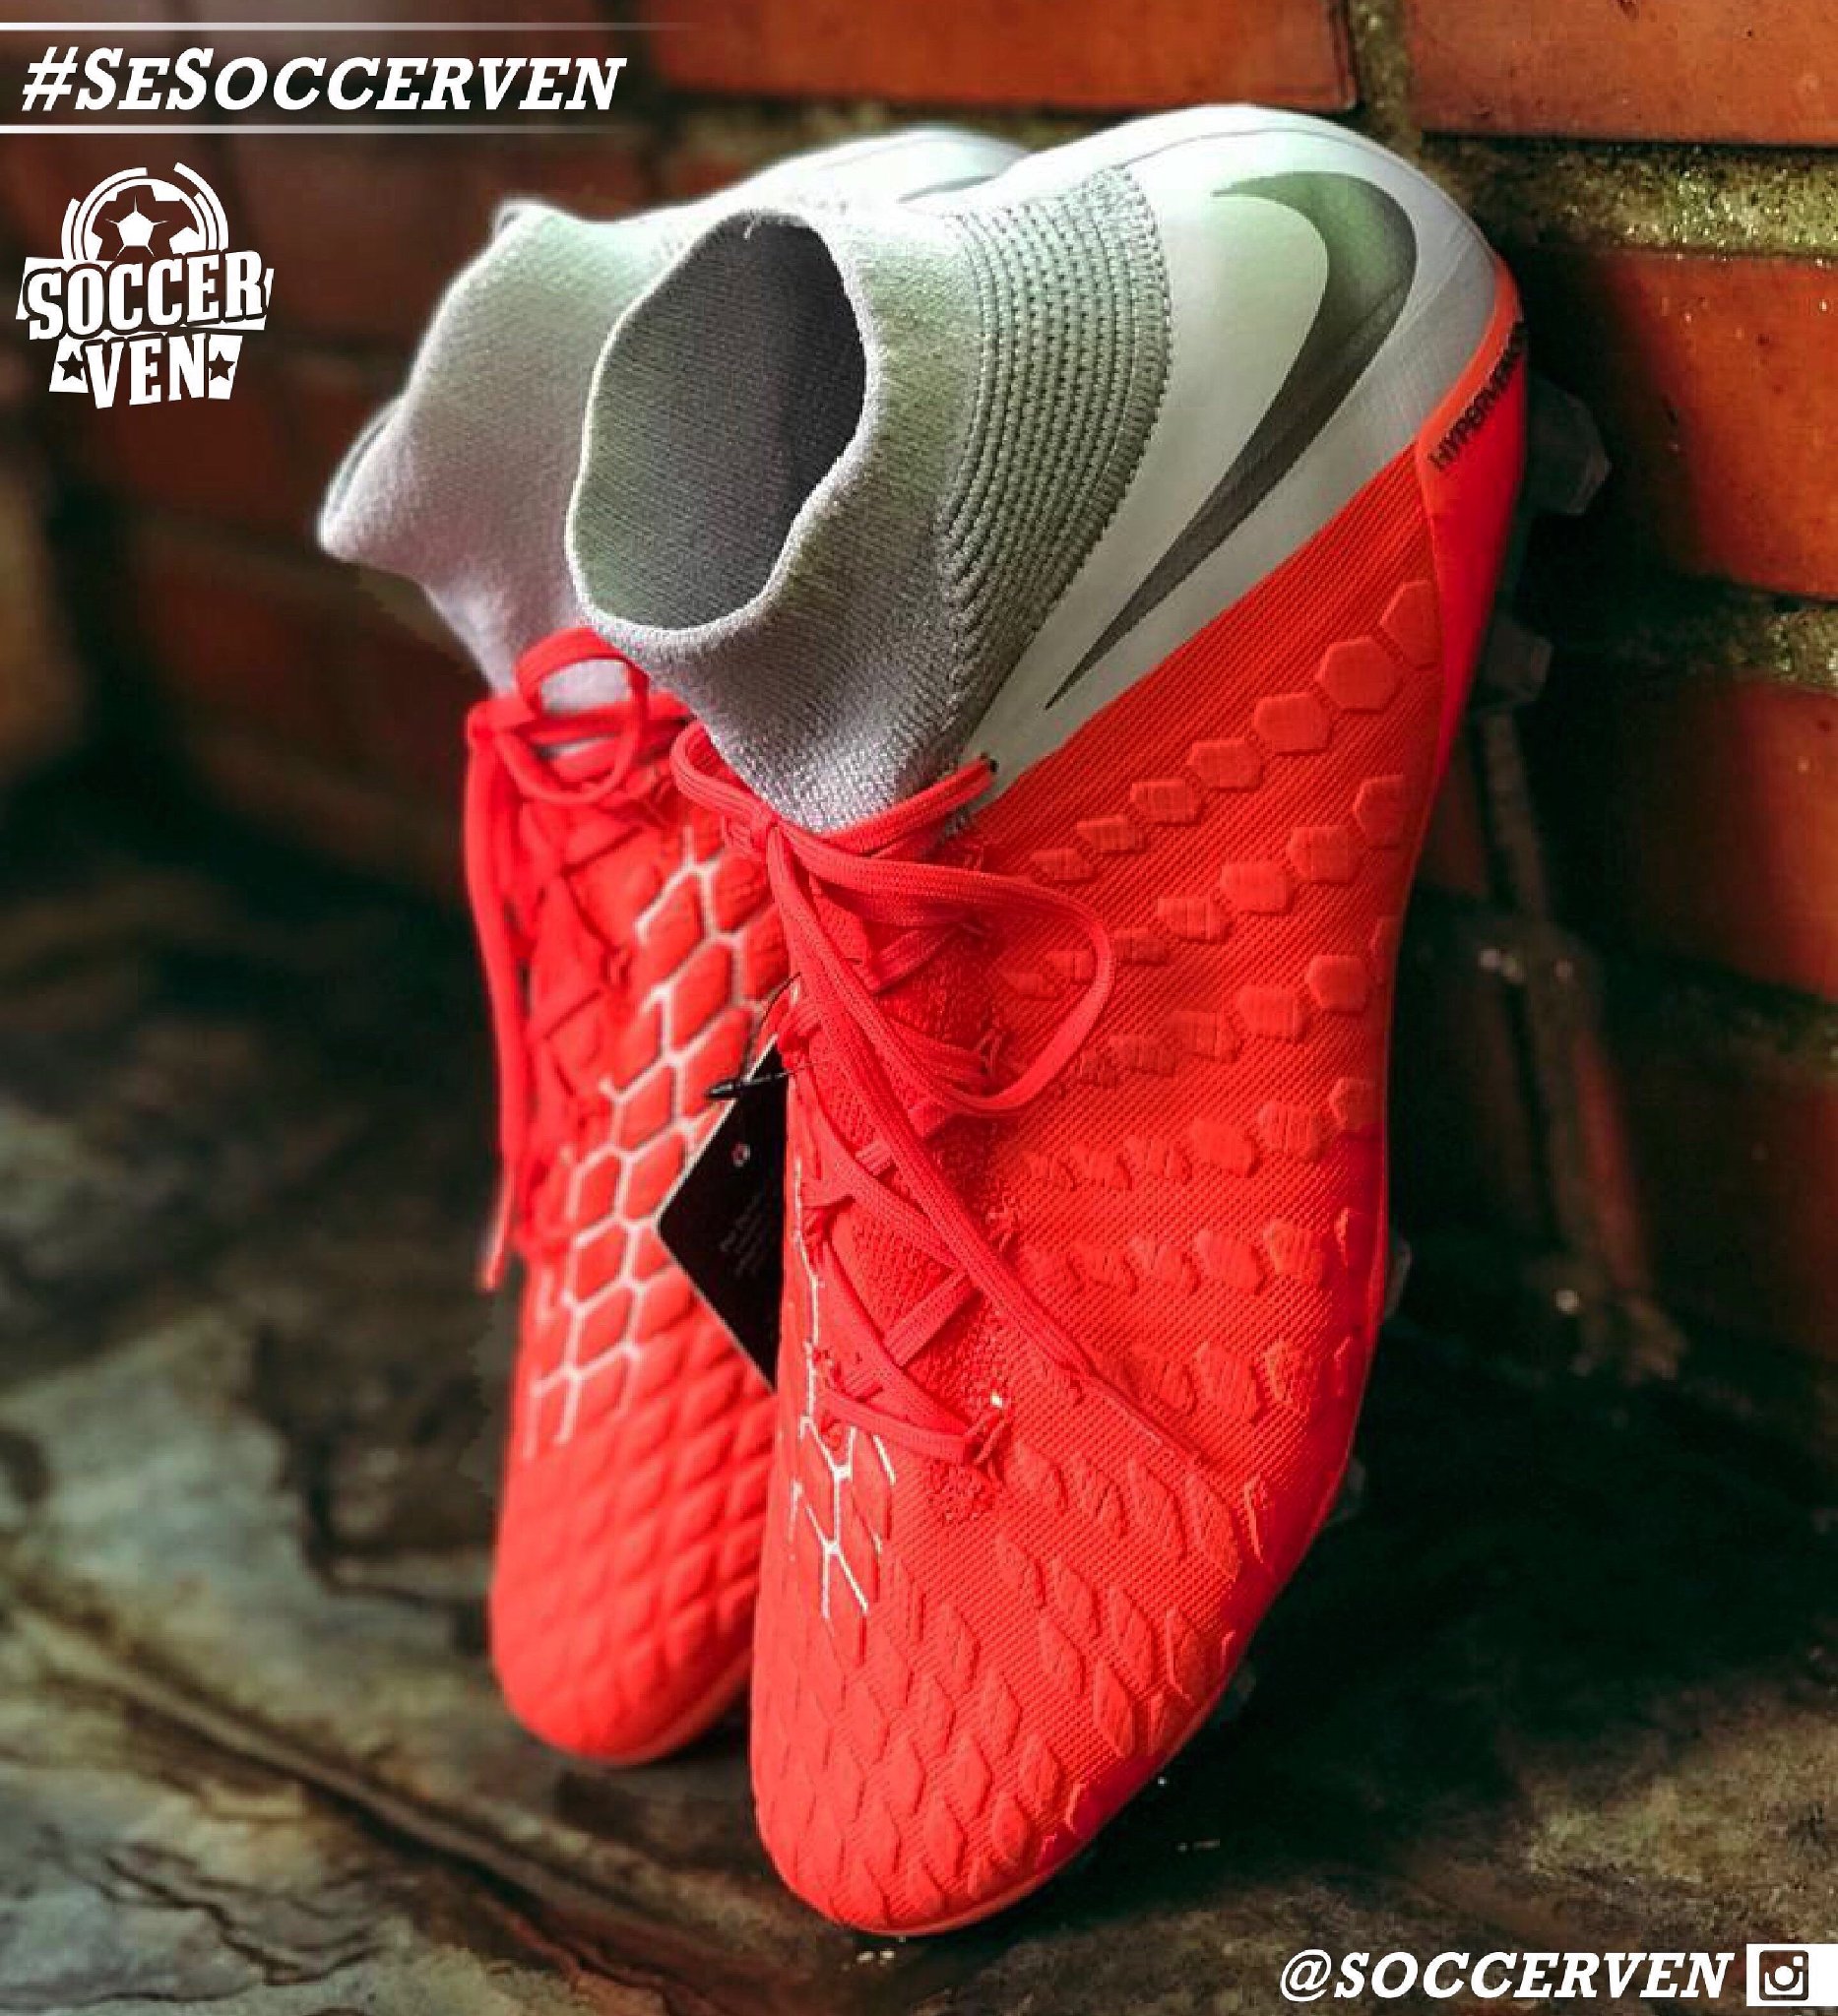 SOLOVENEX - OFICIAL Twitter पर: "#PUBLICIDAD Nike Hypervenom: calzado diseñado para futbolistas de alto rendimiento, una carcasa de Flyknit con paneles de foam reactivos que fortalecen el golpeo de